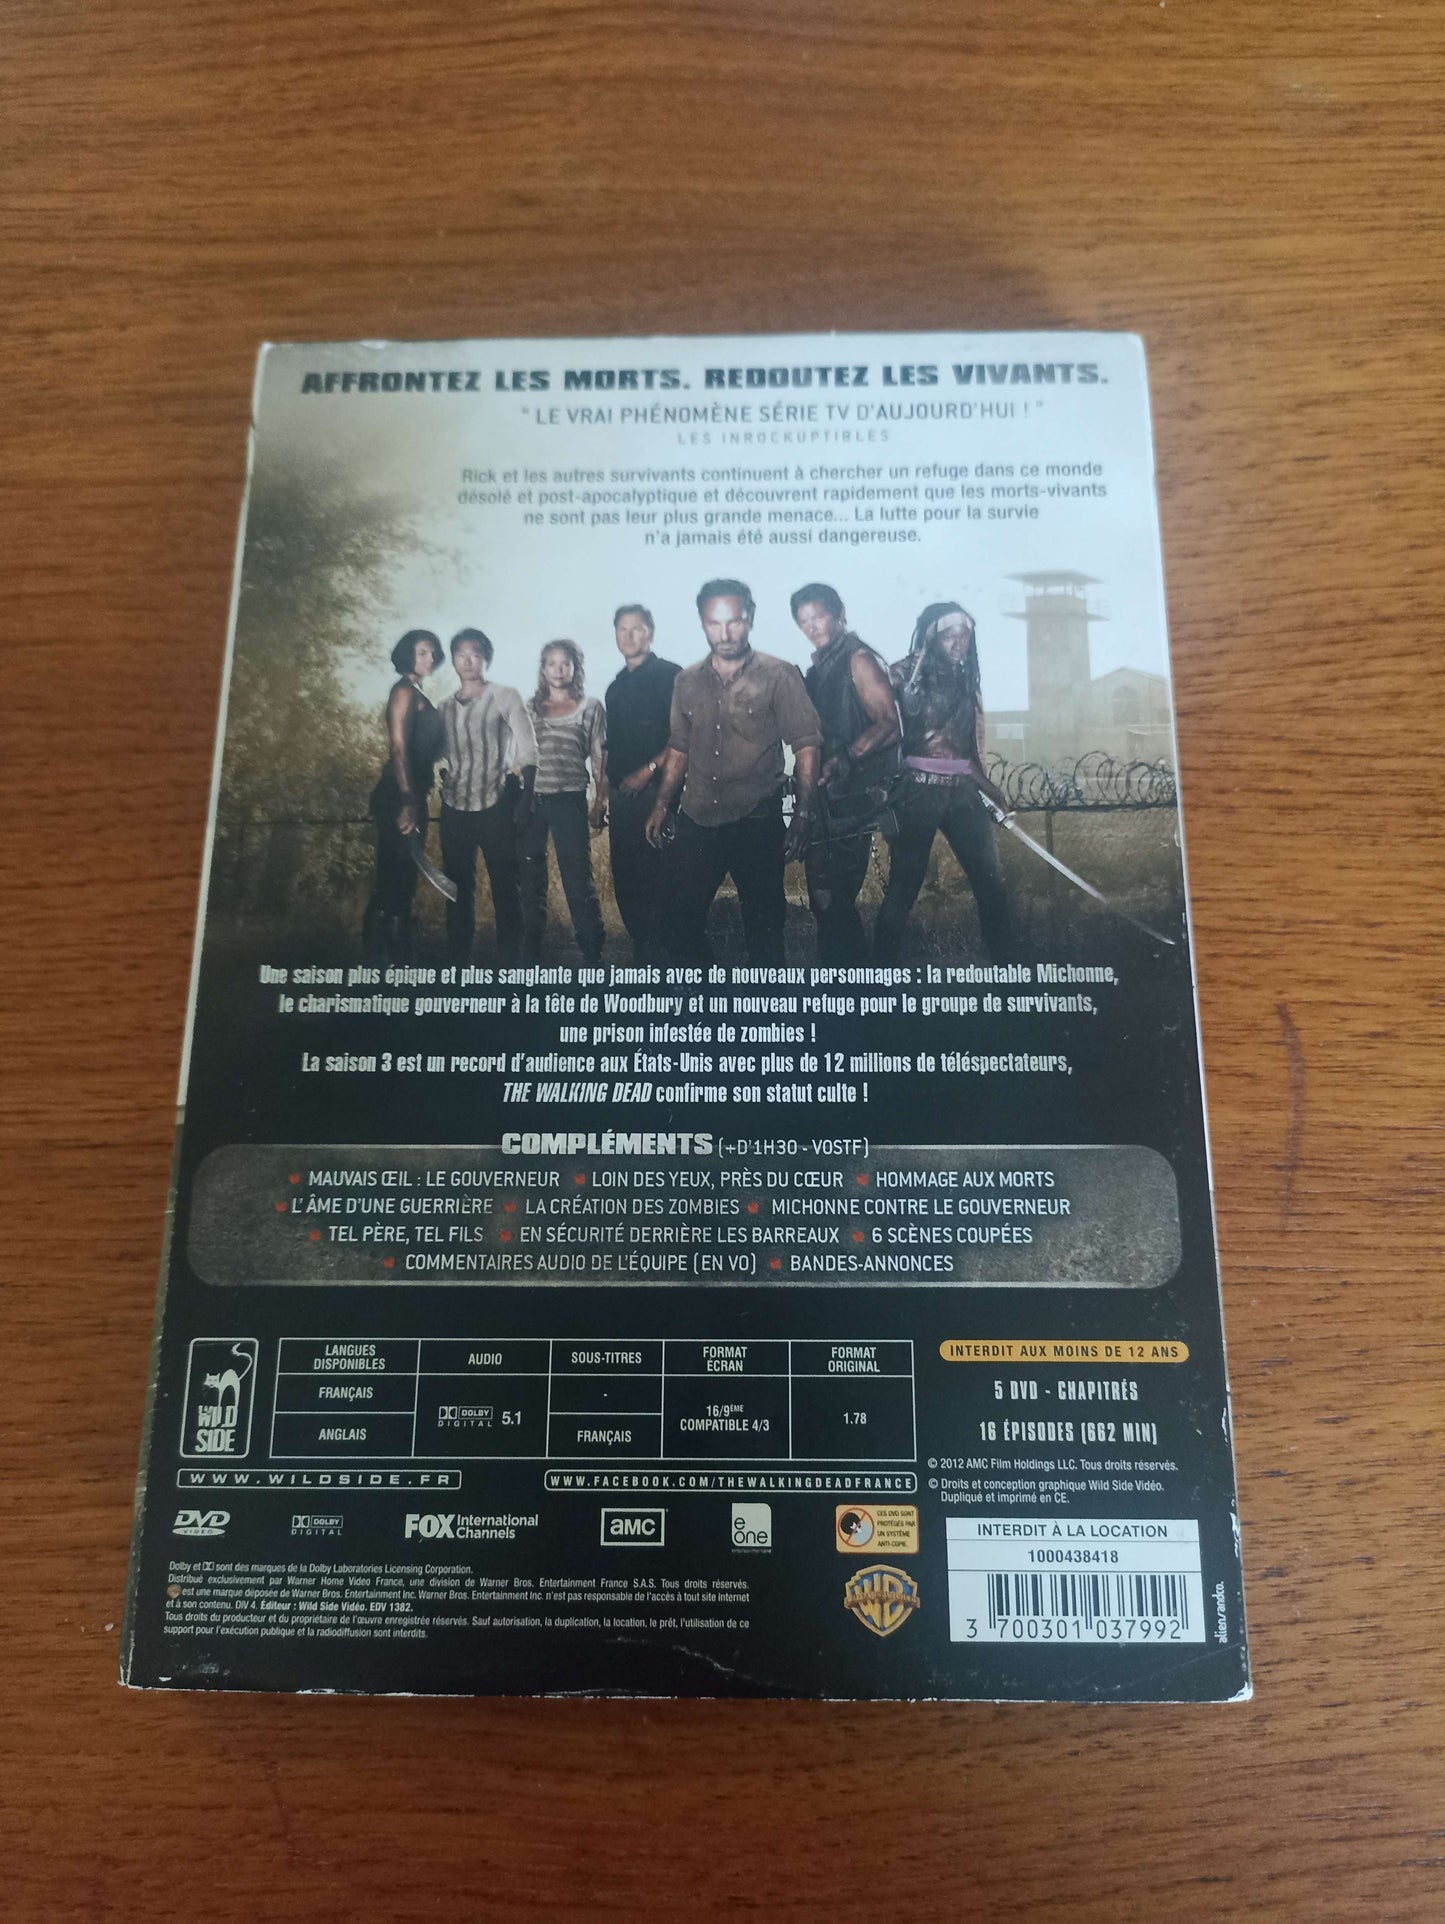 DVD The Walking Dead Intégrale de la saison 3